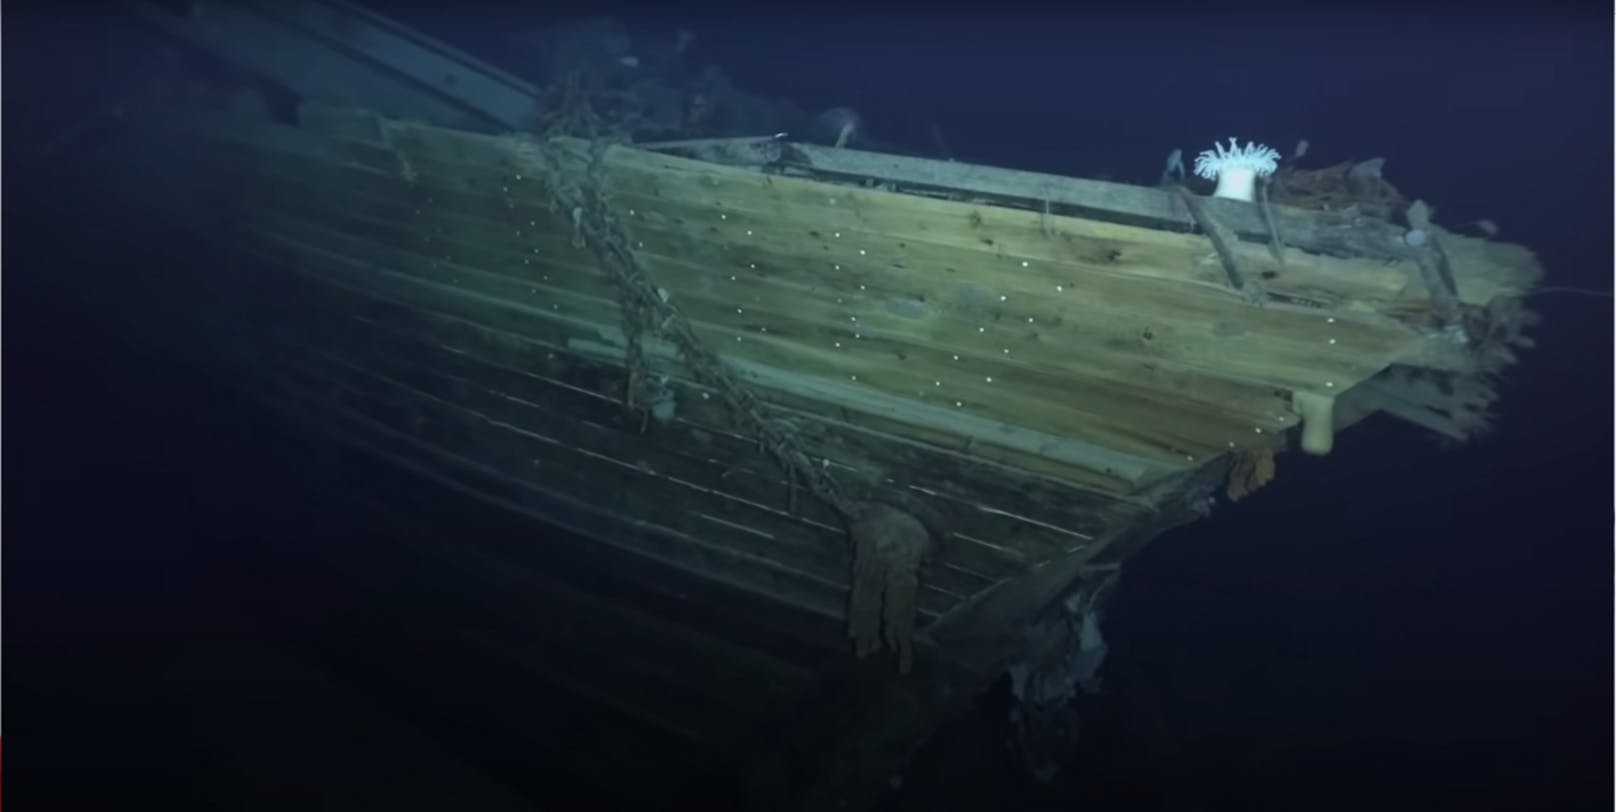 Ein Tauchroboter fertigte diese einzigartigen Aufnahmen an. Das Schiff gilt als wertvolles Kulturgut und soll am Meeresboden verbleiben.